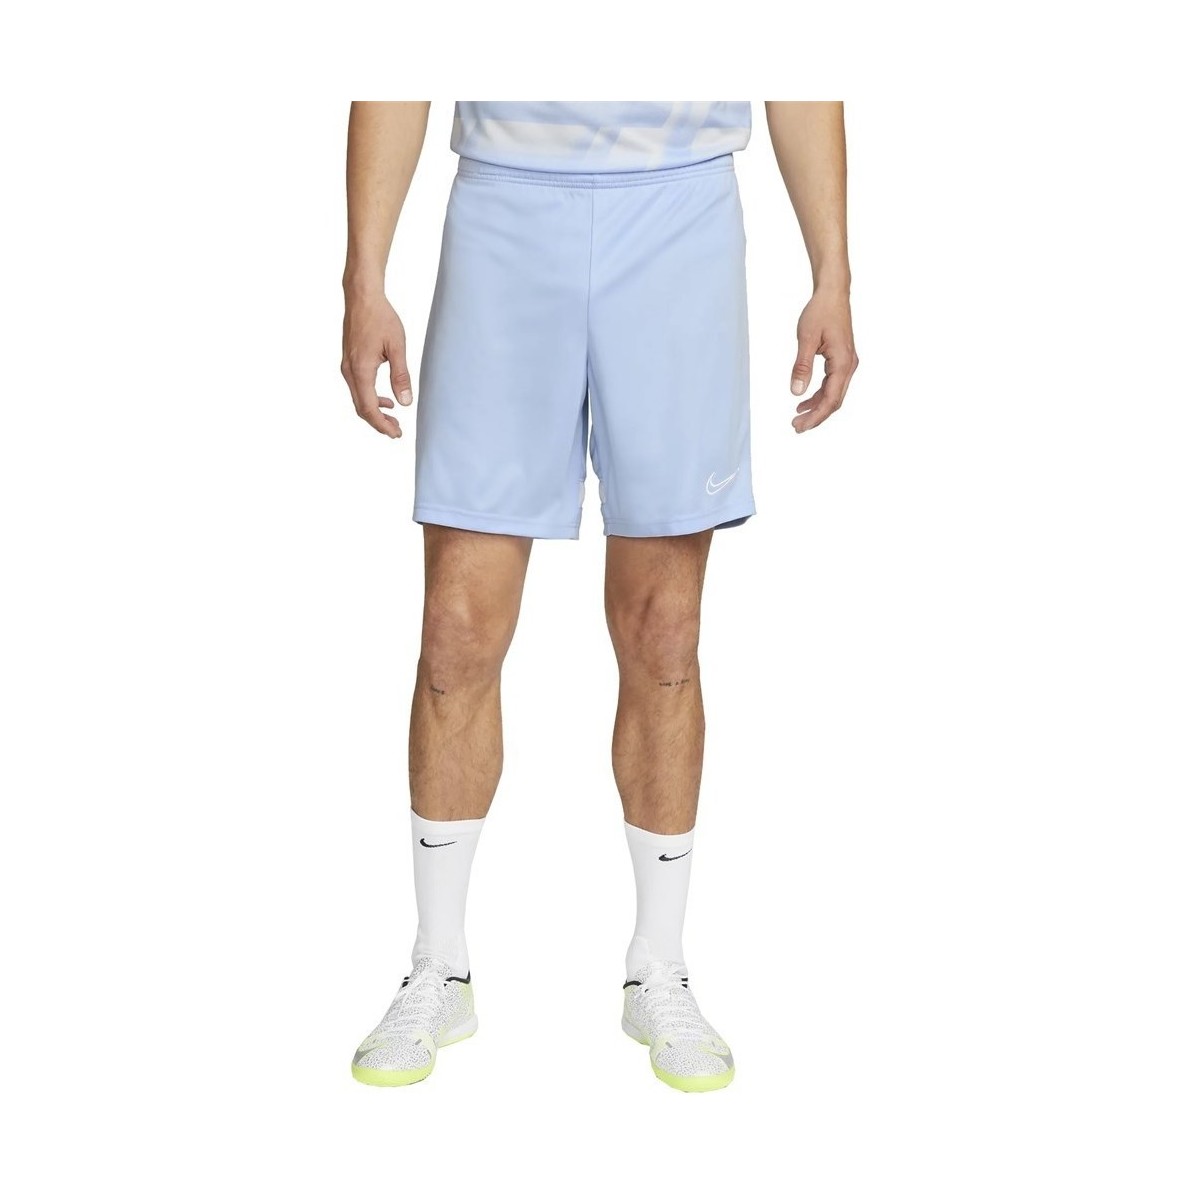 Kleidung Herren 3/4 Hosen & 7/8 Hosen Nike Drifit Academy Shorts Blau